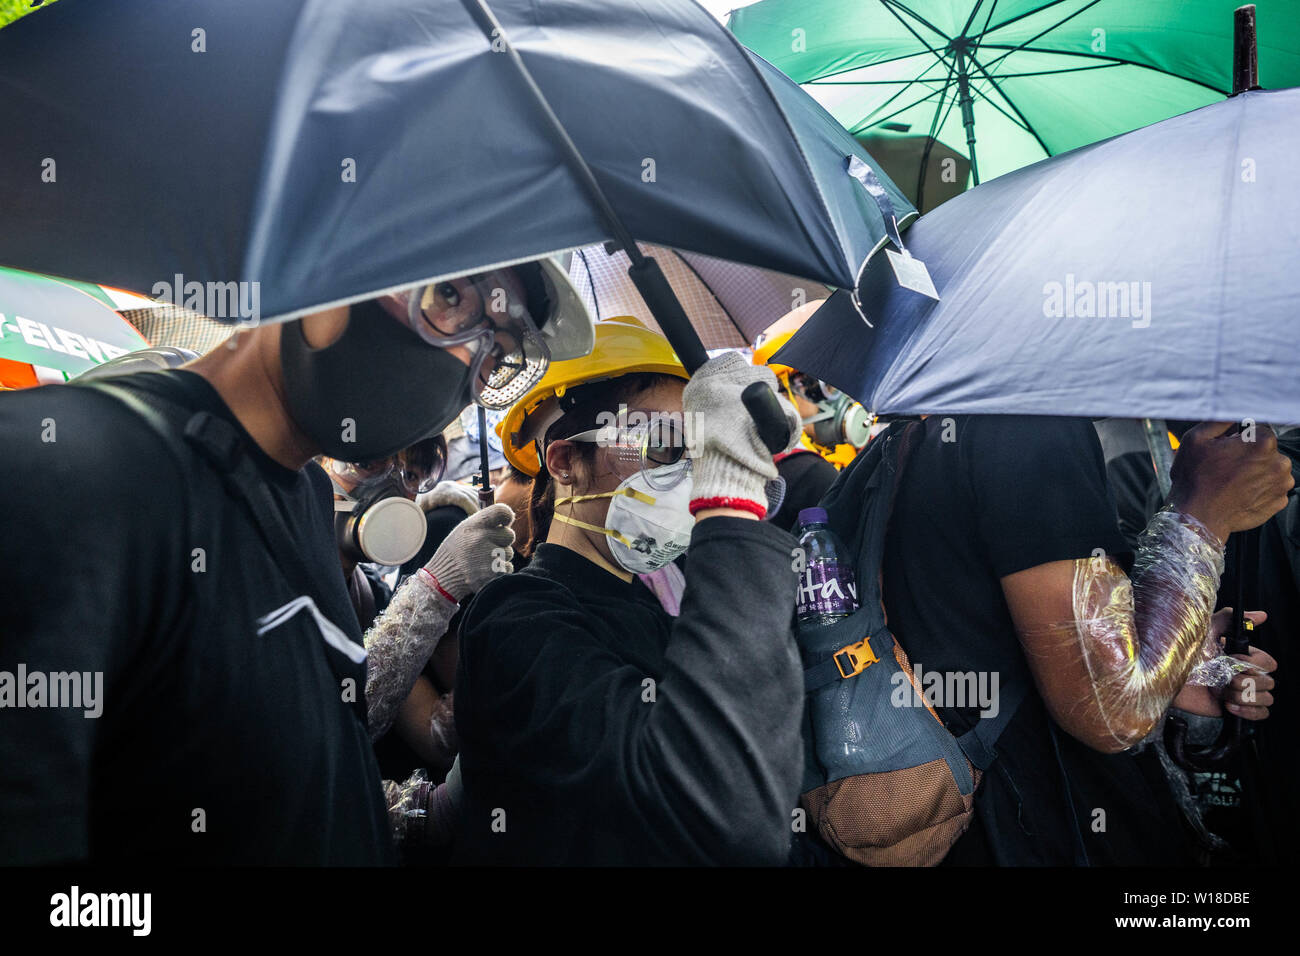 Des manifestants anti gouvernement utiliser parasols comme boucliers, ils ont également porter des engins tels demandez des masques à gaz, casques et lunettes de sécurité pour eux-mêmes la défense de jet de poivre de la police et des gaz lacrymogènes alors qu'ils tentent de prendre d'assaut le bâtiment du Conseil législatif.Des centaines de manifestants se rassemblent à l'extérieur du bâtiment du Conseil législatif et tentent de forcer le passage et occuper le parlement de Hong Kong le 1 juillet que le territoire a marqué l'anniversaire de sa 22e anniversaire rétrocession à la Chine. Banque D'Images